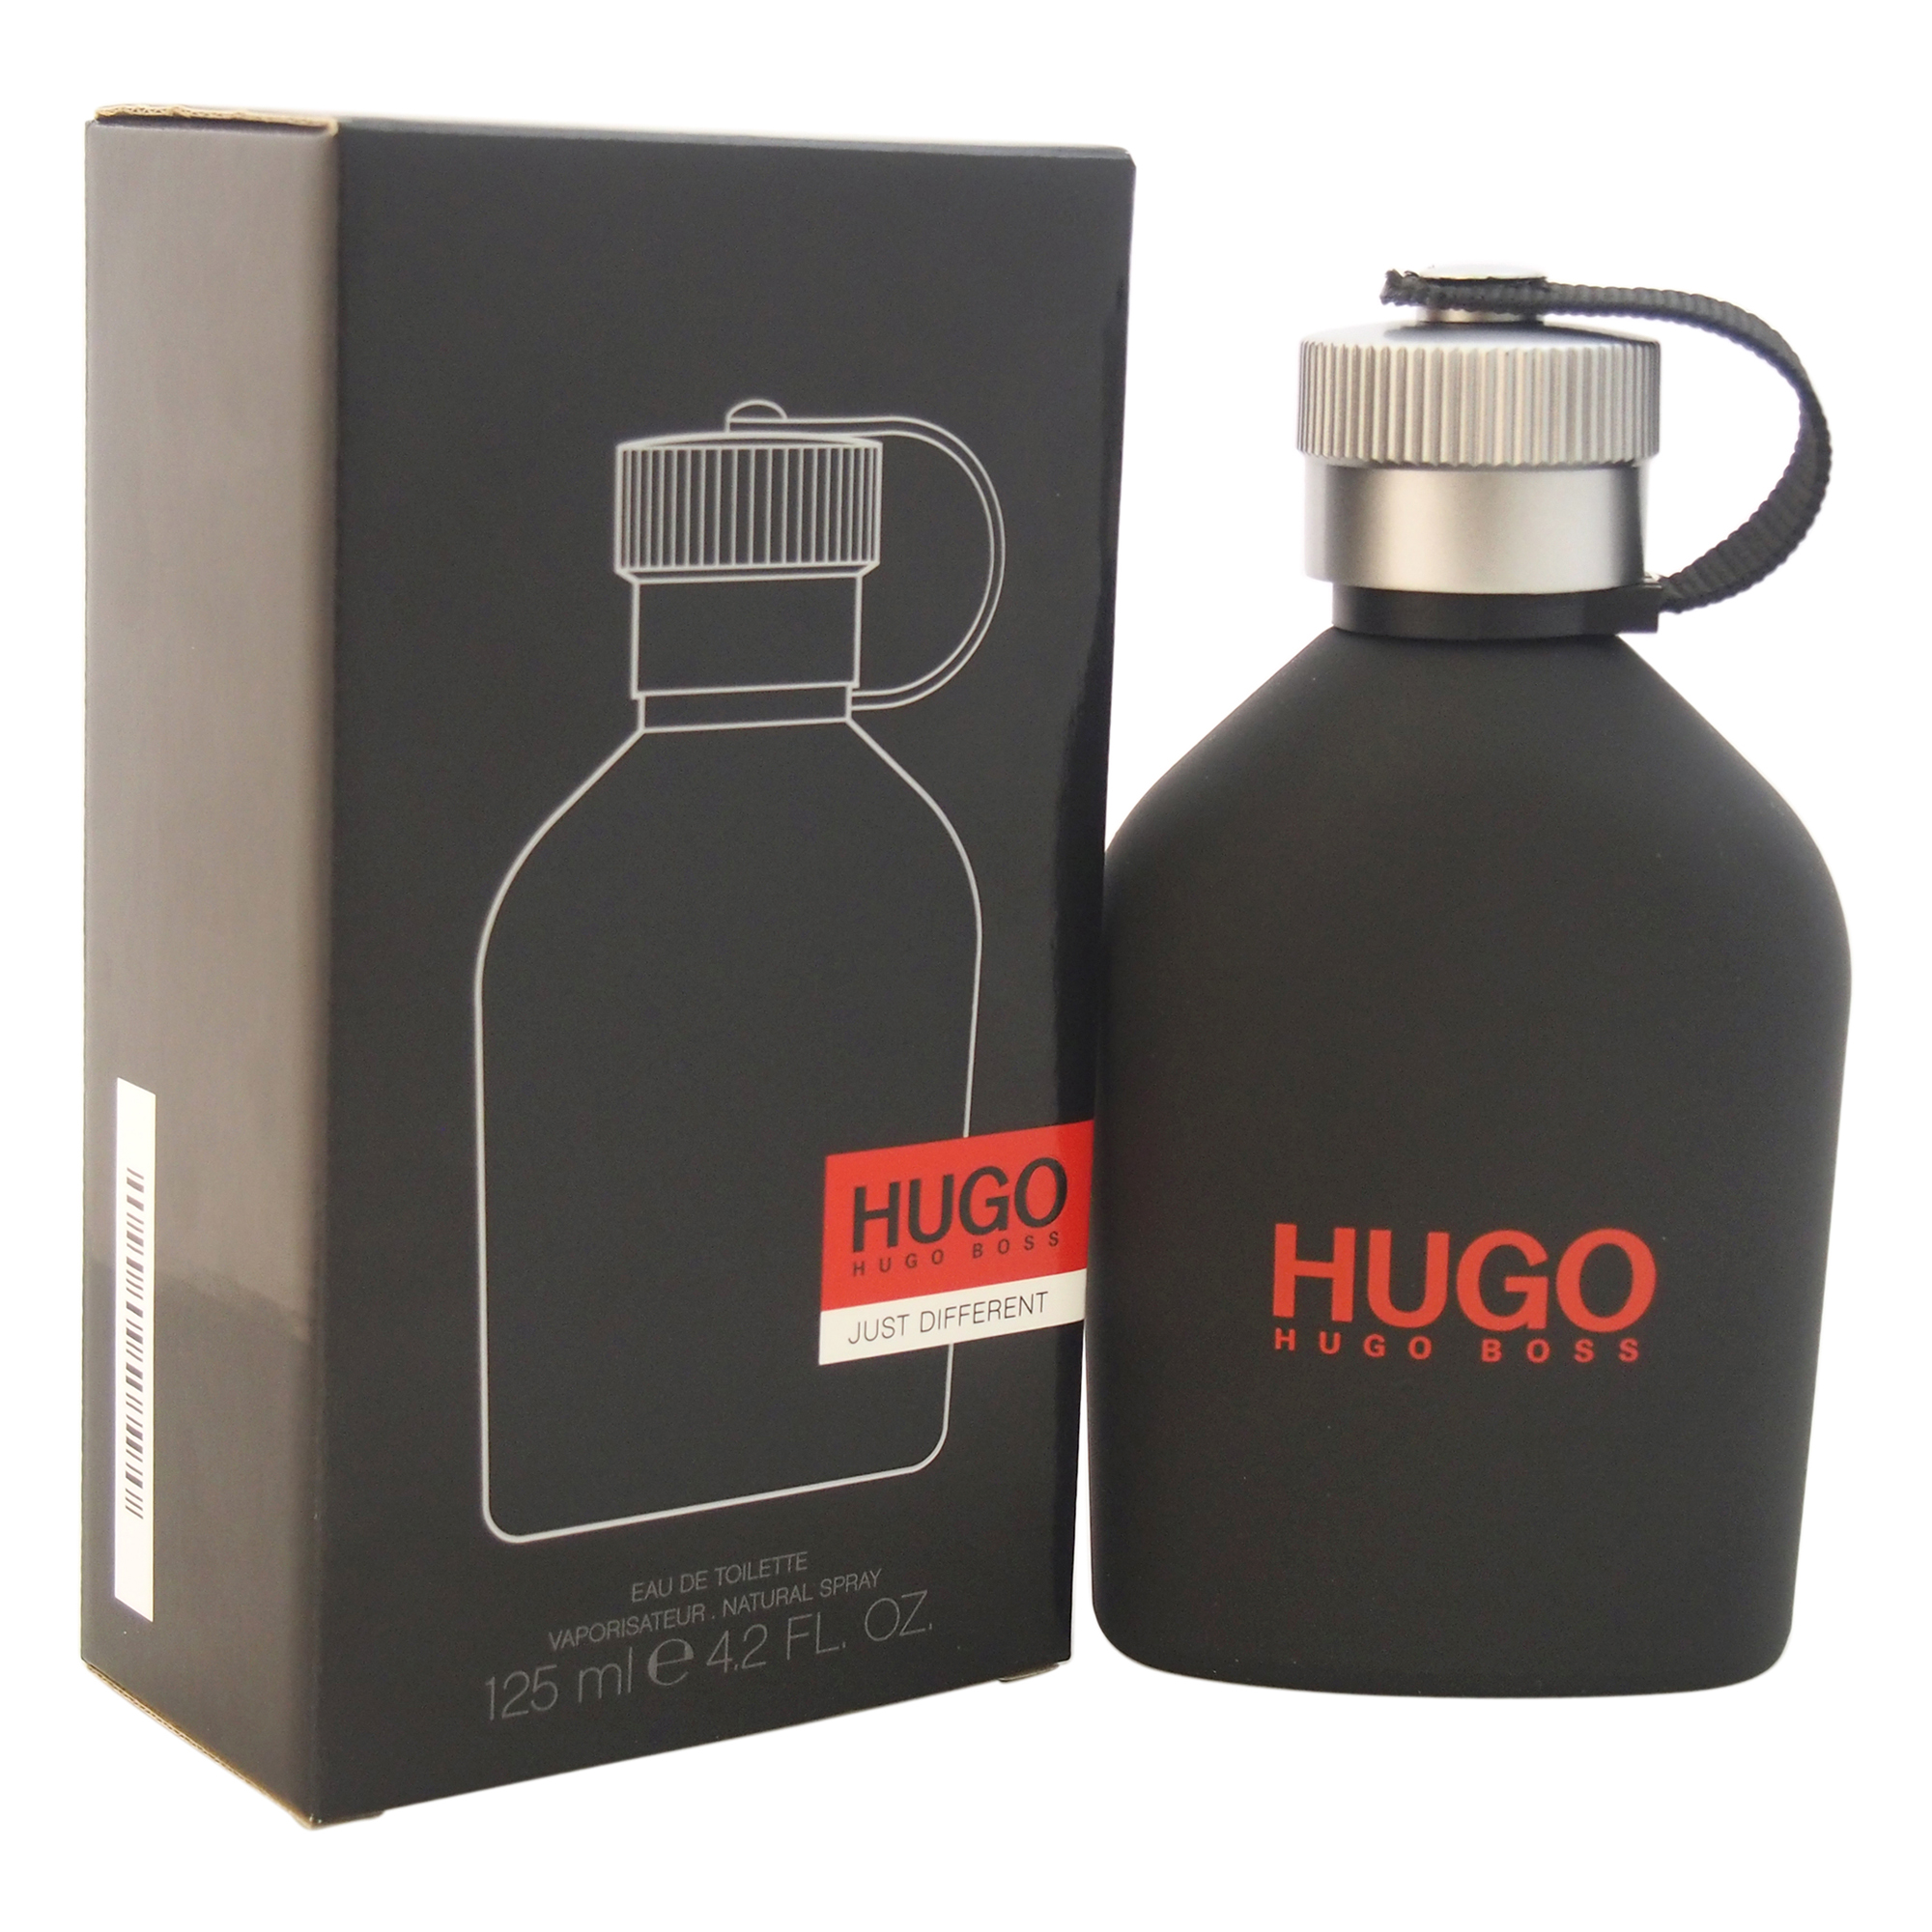 HUGO JUST DIFFERENT by Hugo Boss for Men - 4.2 oz EDT Spray